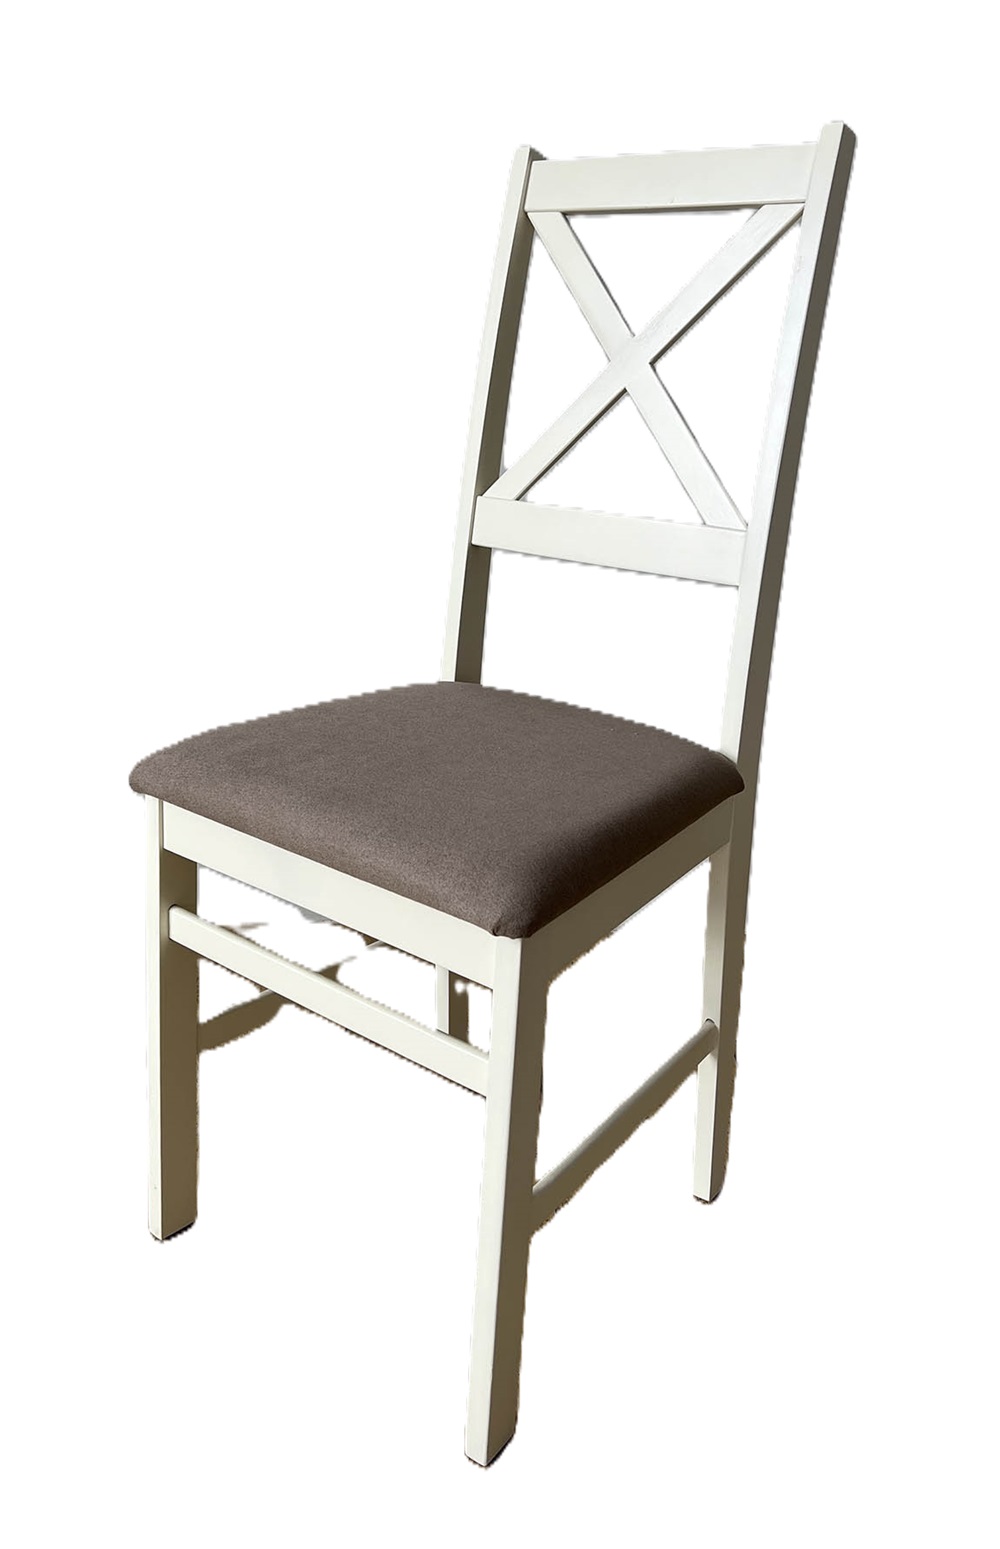 Деревянный стул со спинкой. Обивка из микровелюра. Цвет слоновая кость/коричневый.